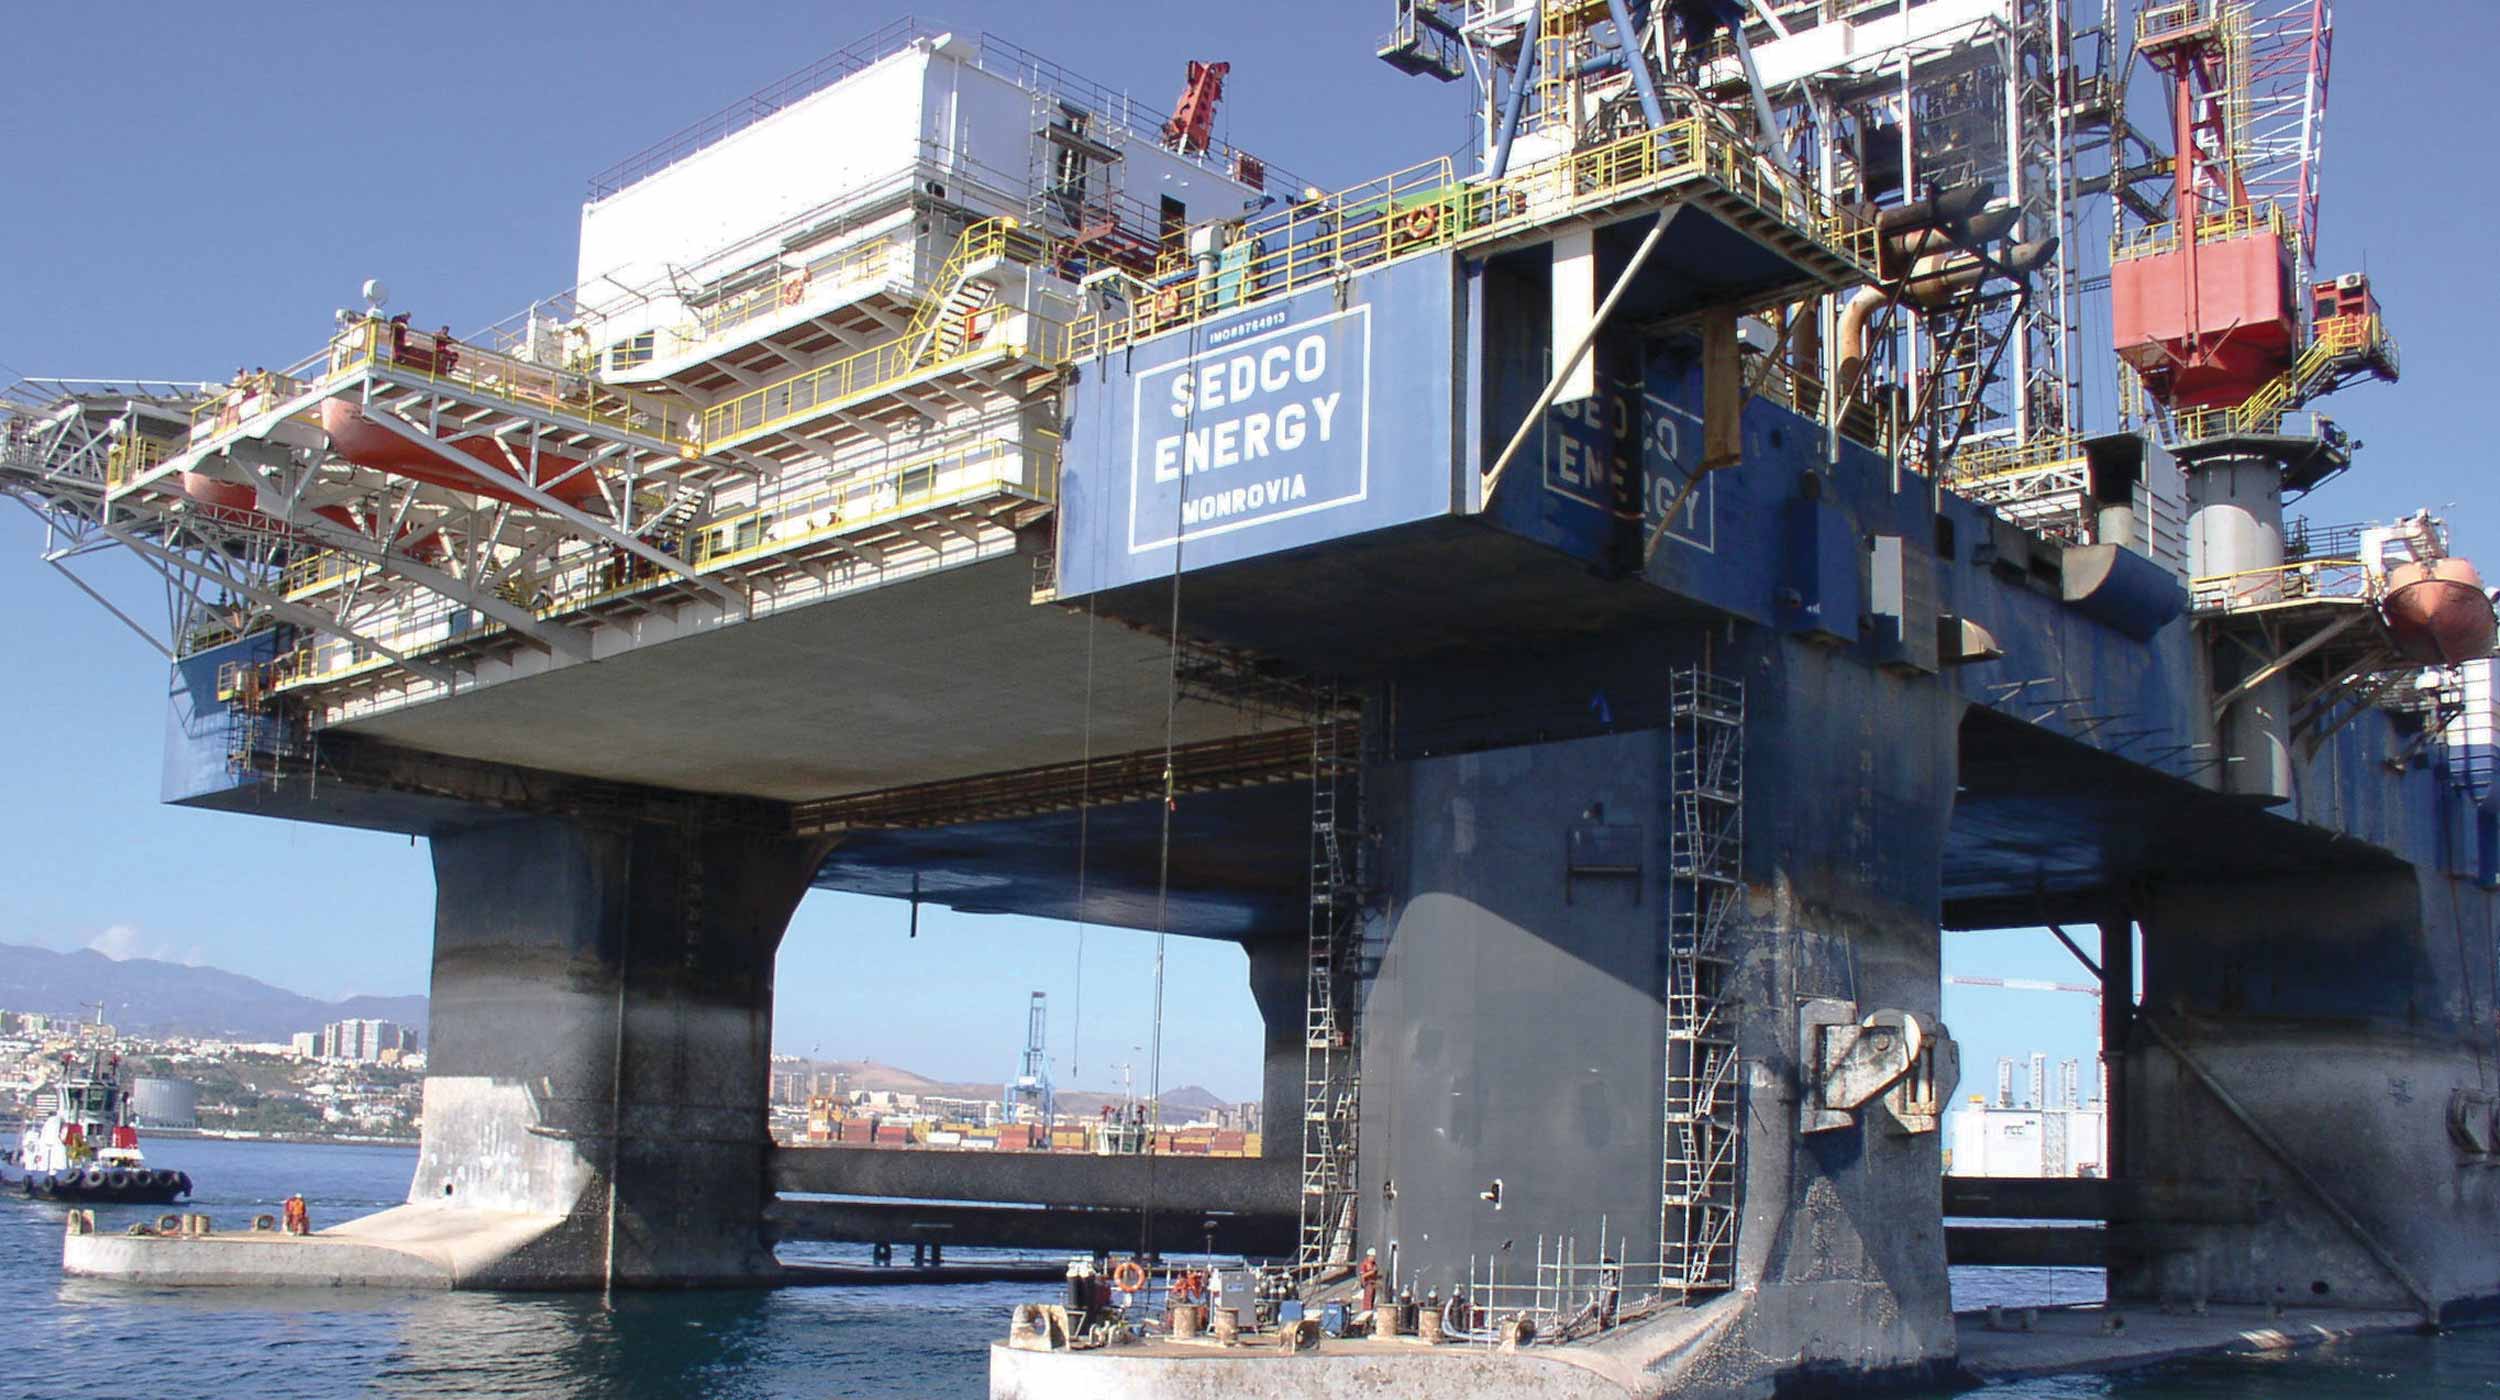 Manutenção de plataformas petrolíferas que realizam as paradas no Porto da Luz e Las Palmas (Gran Canária) procedentes de depósitos do sul da África.